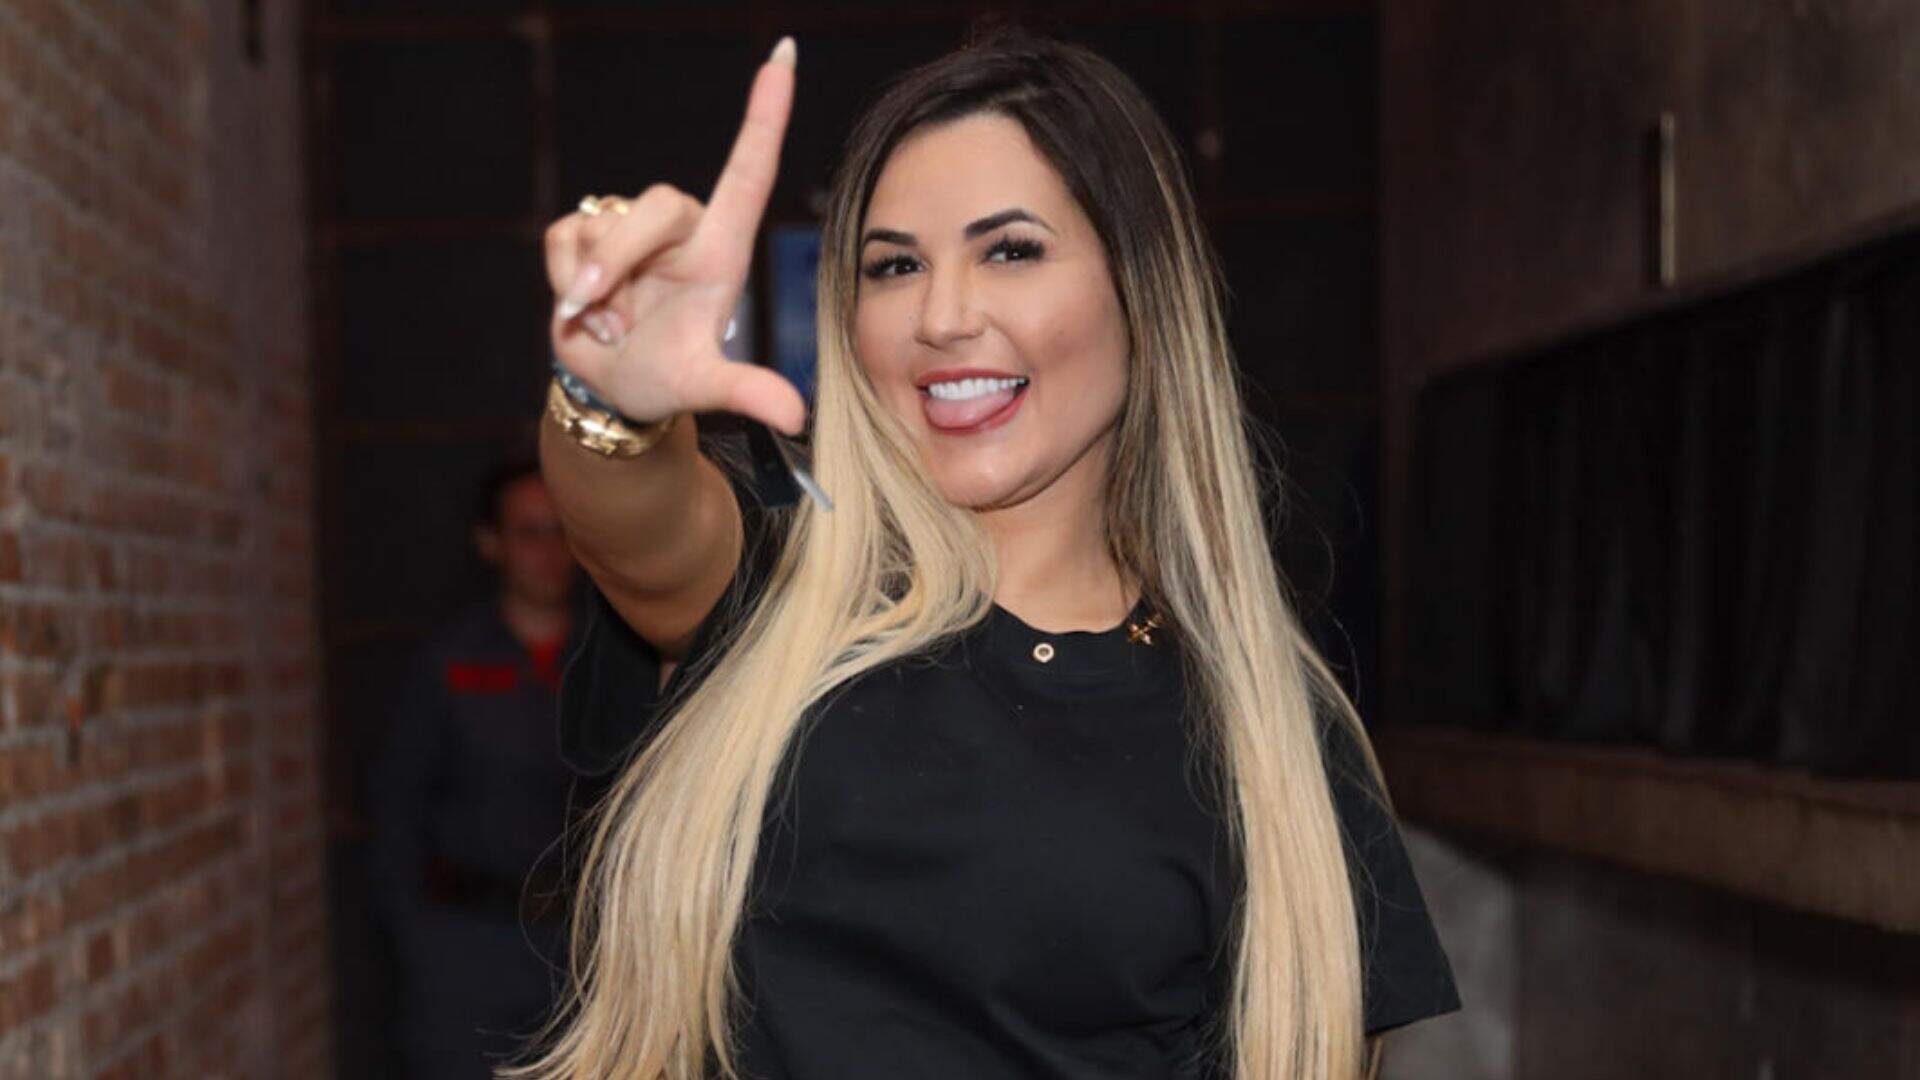 Envolvida na política? Deolane Bezerra deixa anotação inesperada vazar em foto e choca: “Janja” - Metropolitana FM